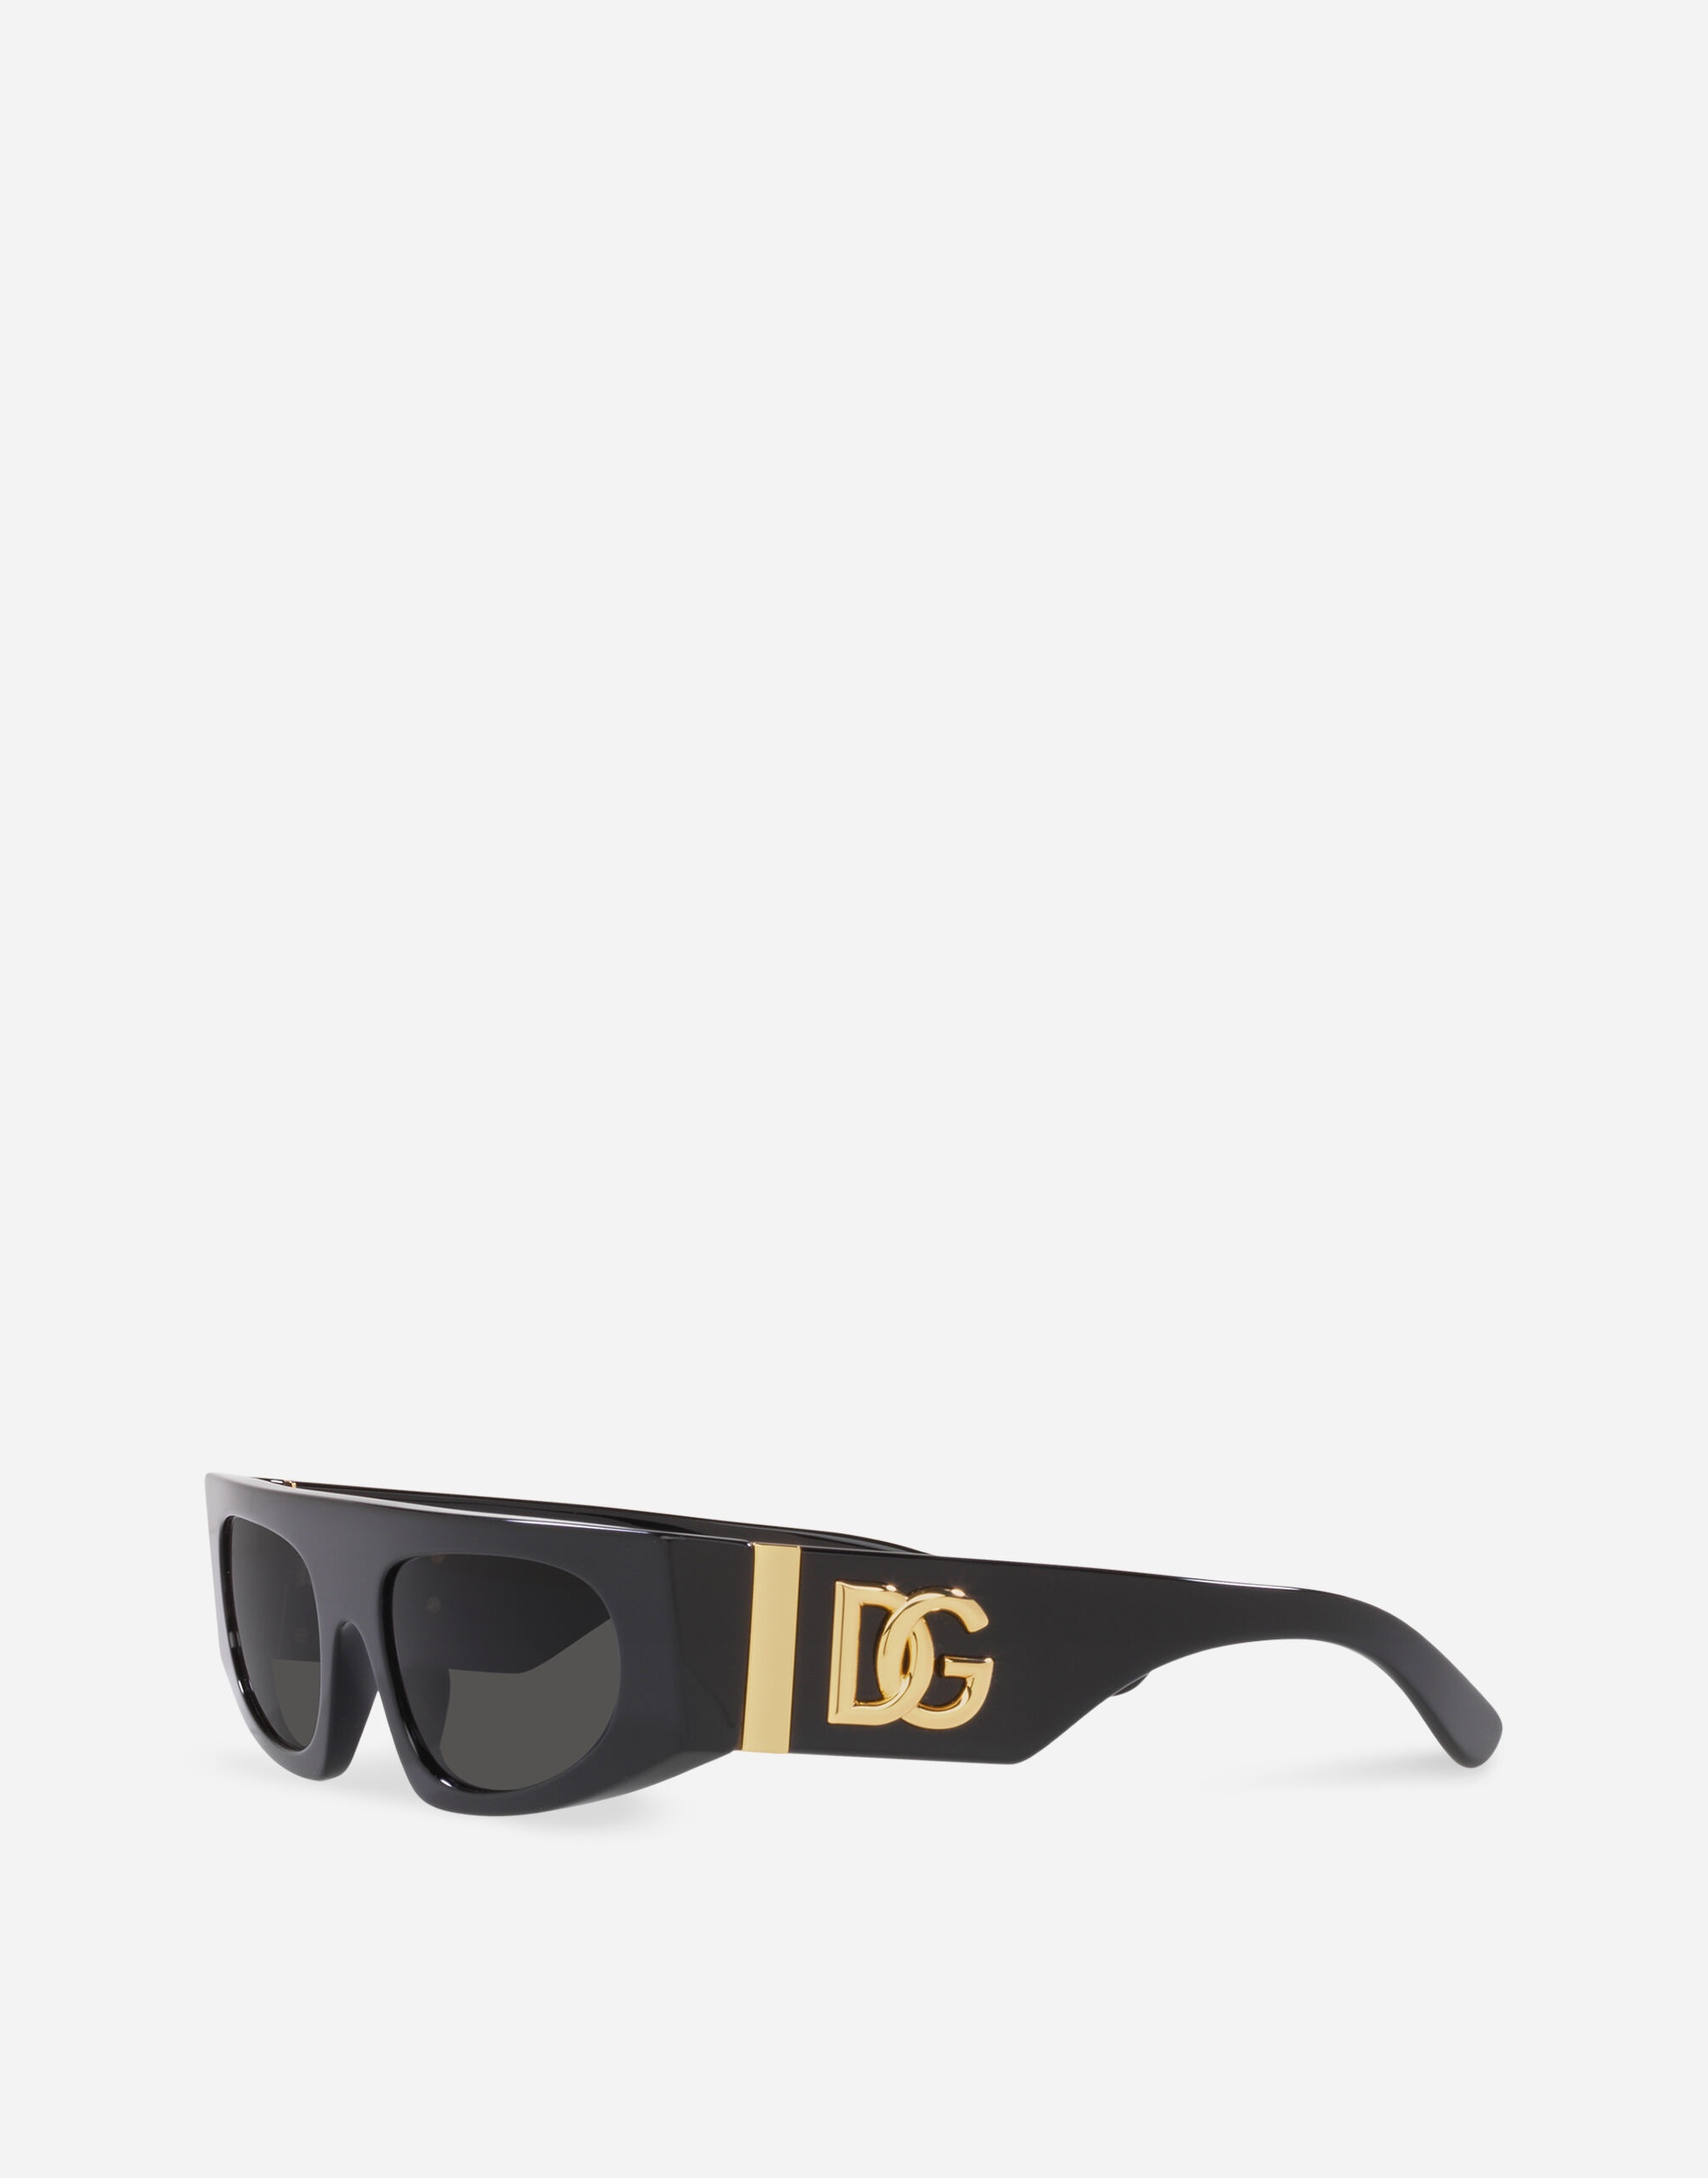 DG Crossed Sunglasses - 2